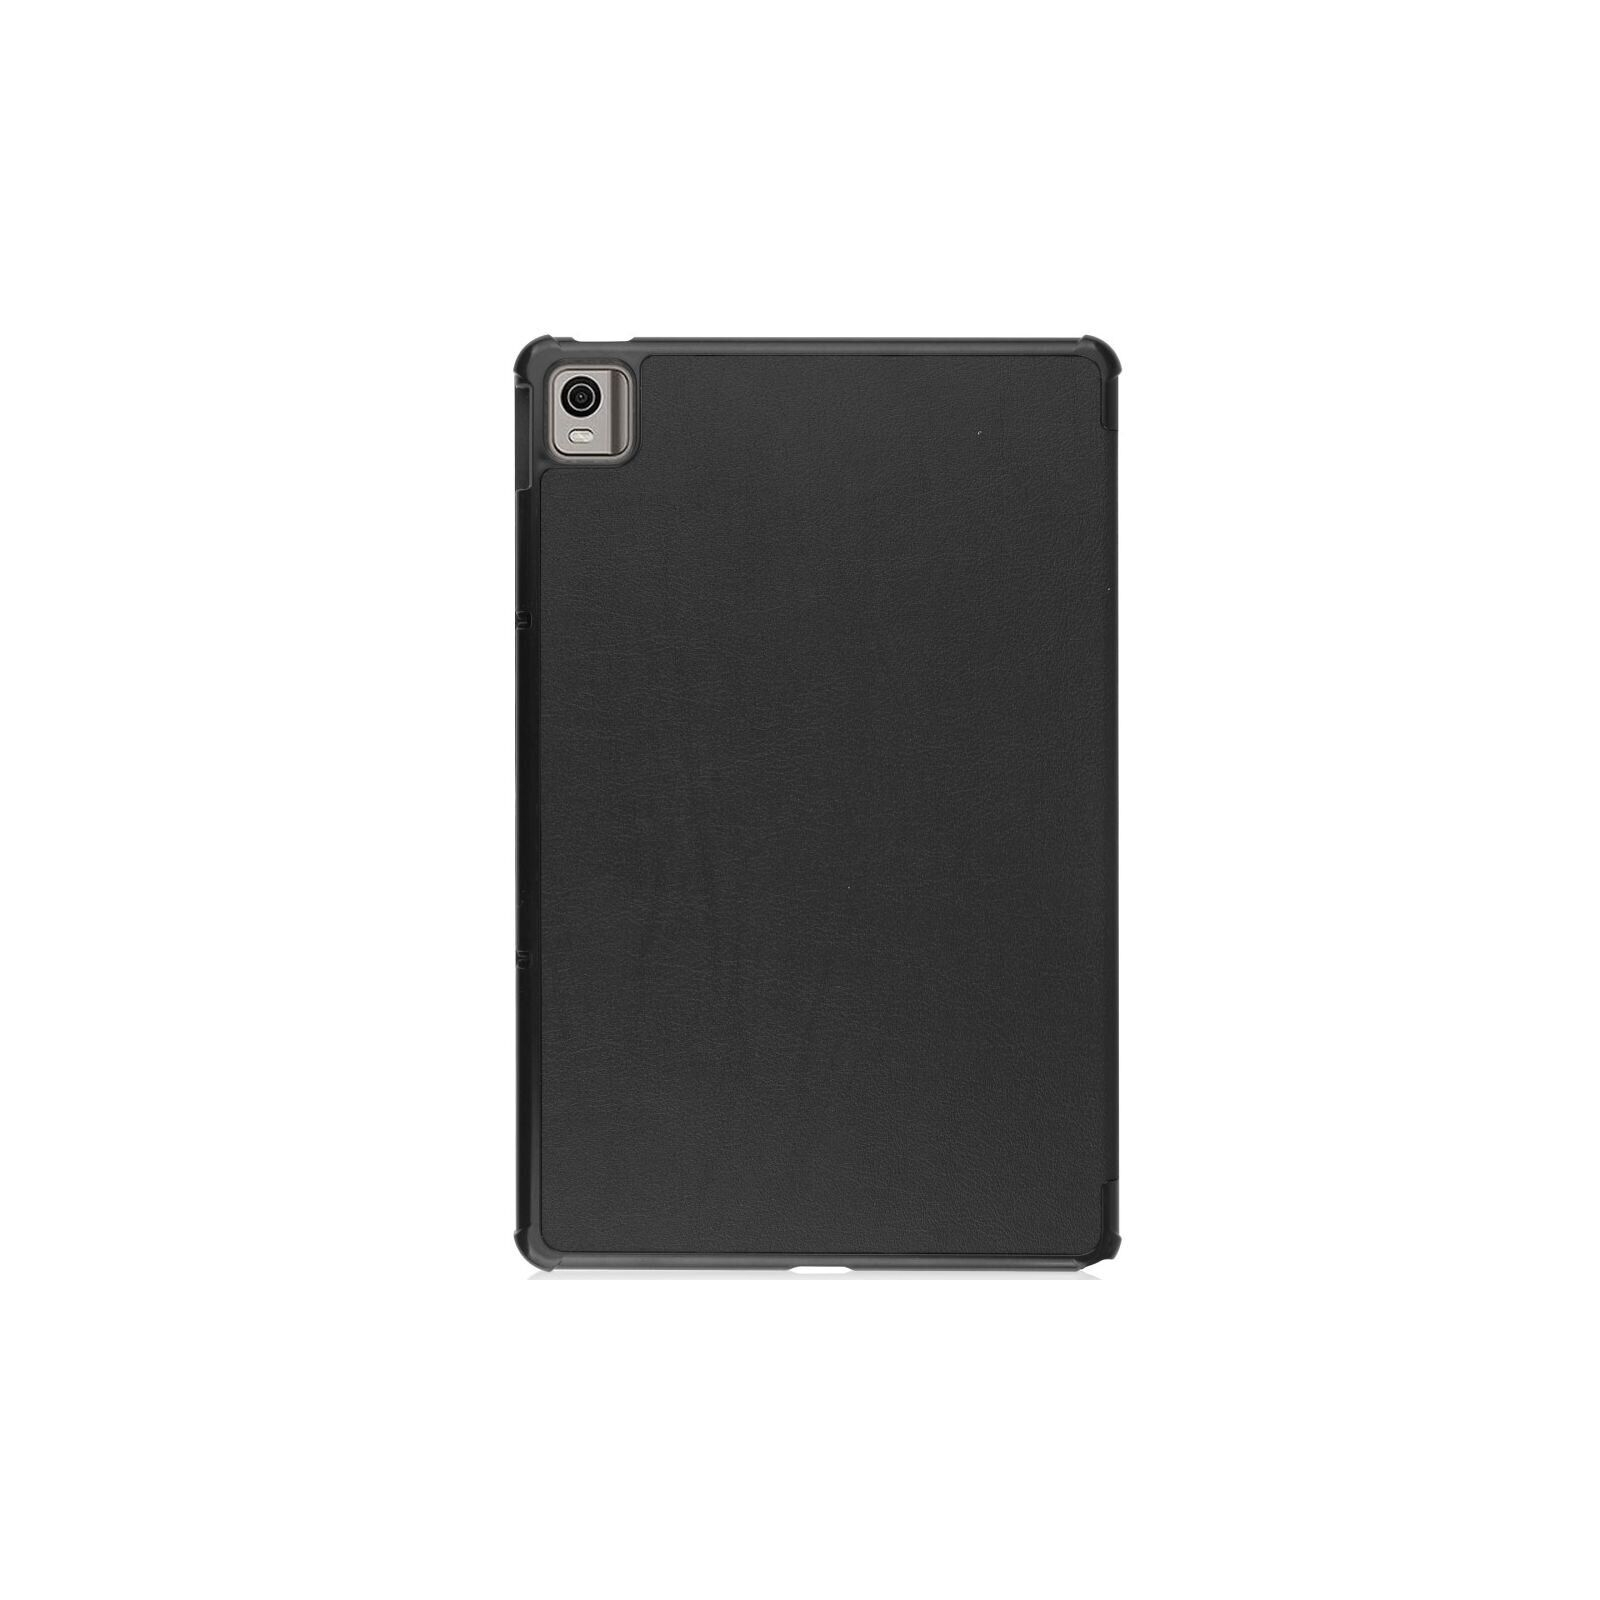 Чехол для планшета BeCover Smart Case Nokia T21 10.4" Deep Blue (709556) изображение 2